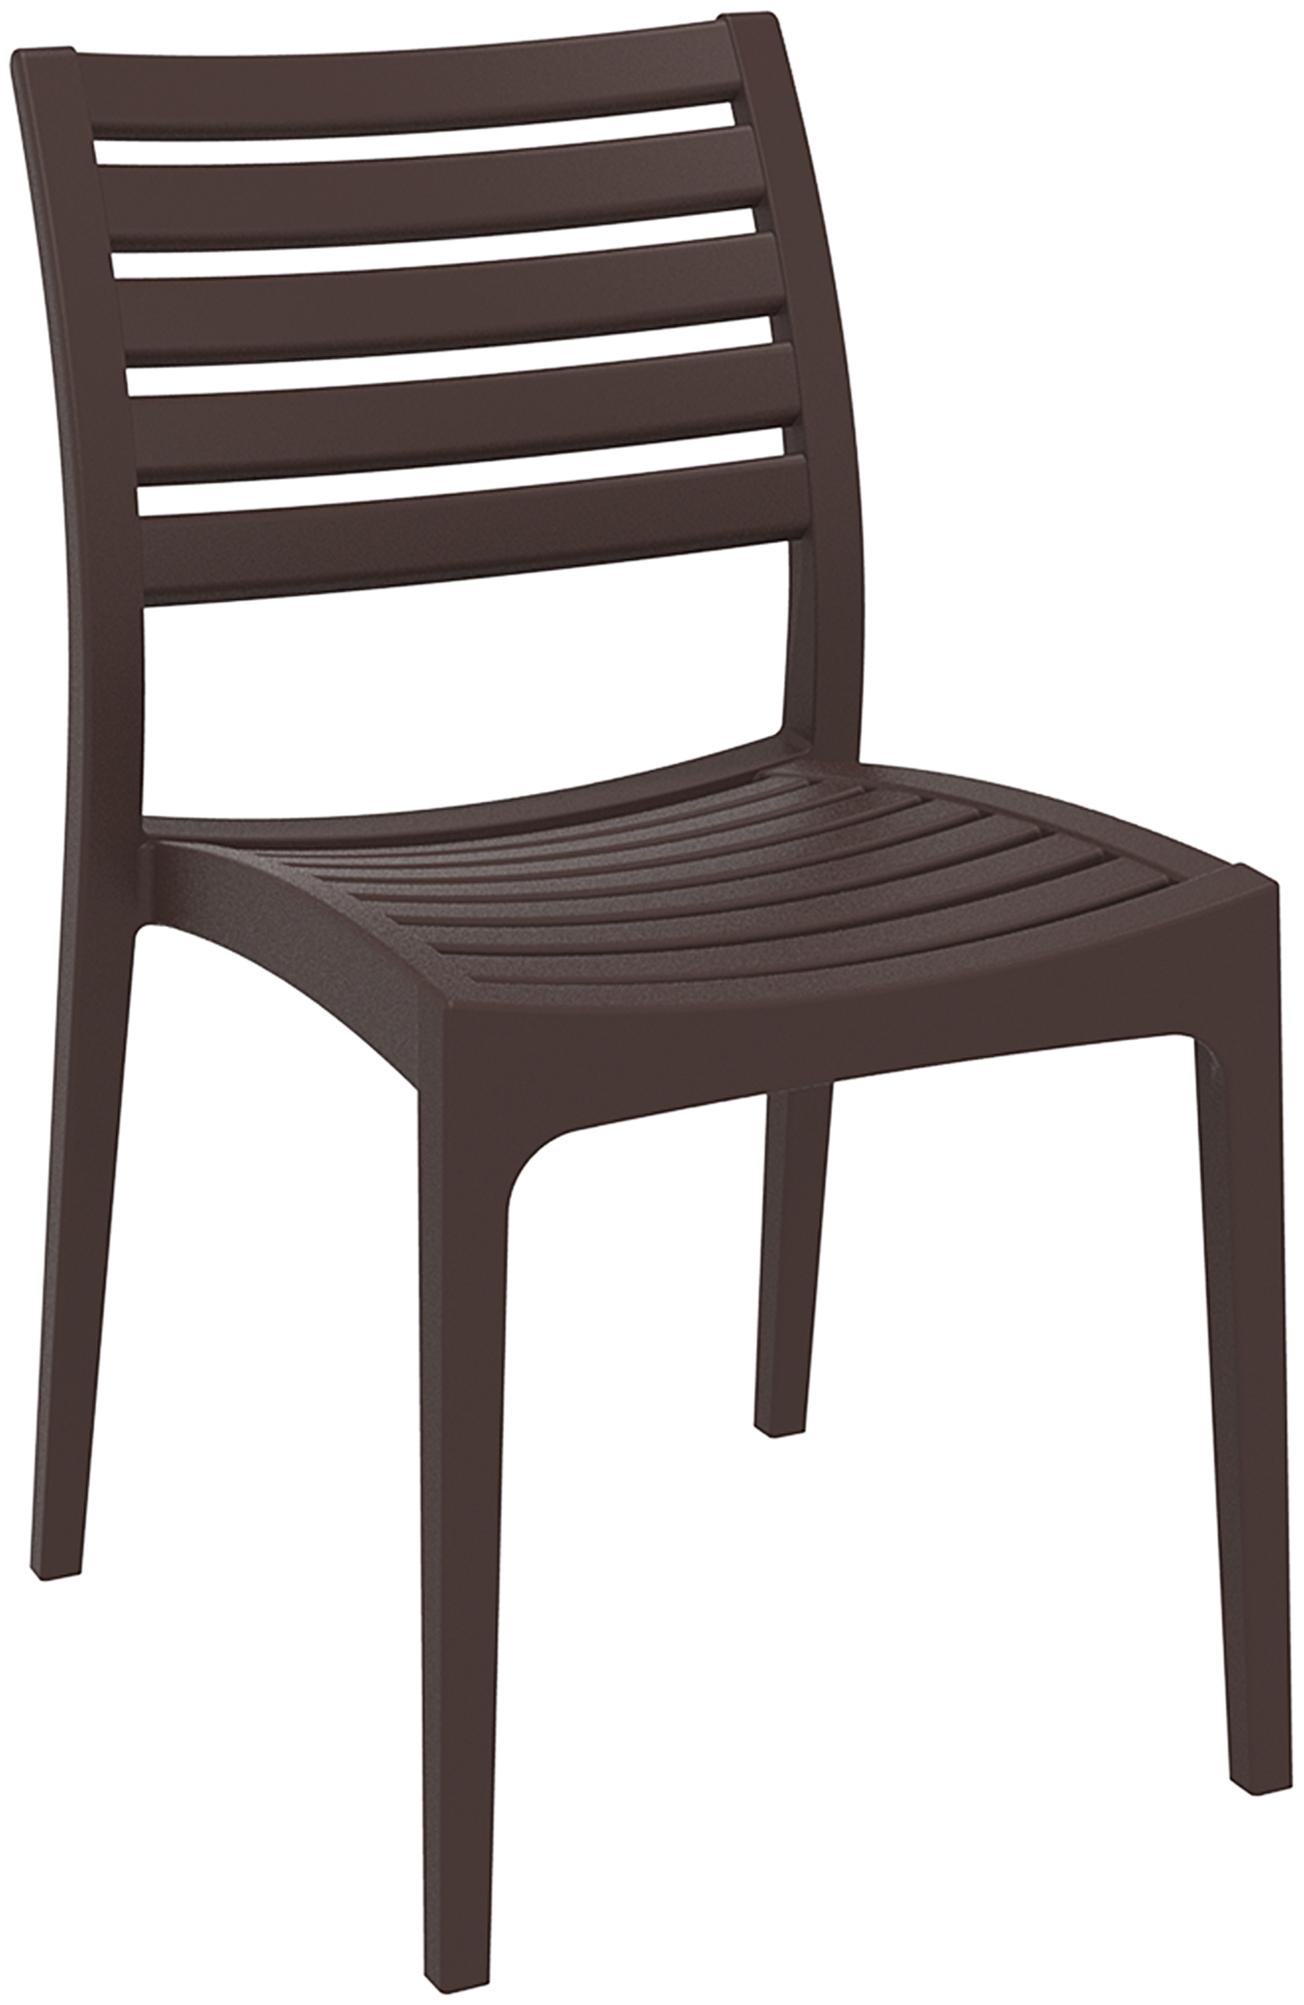 chaises de jardin empilable en plastique marron